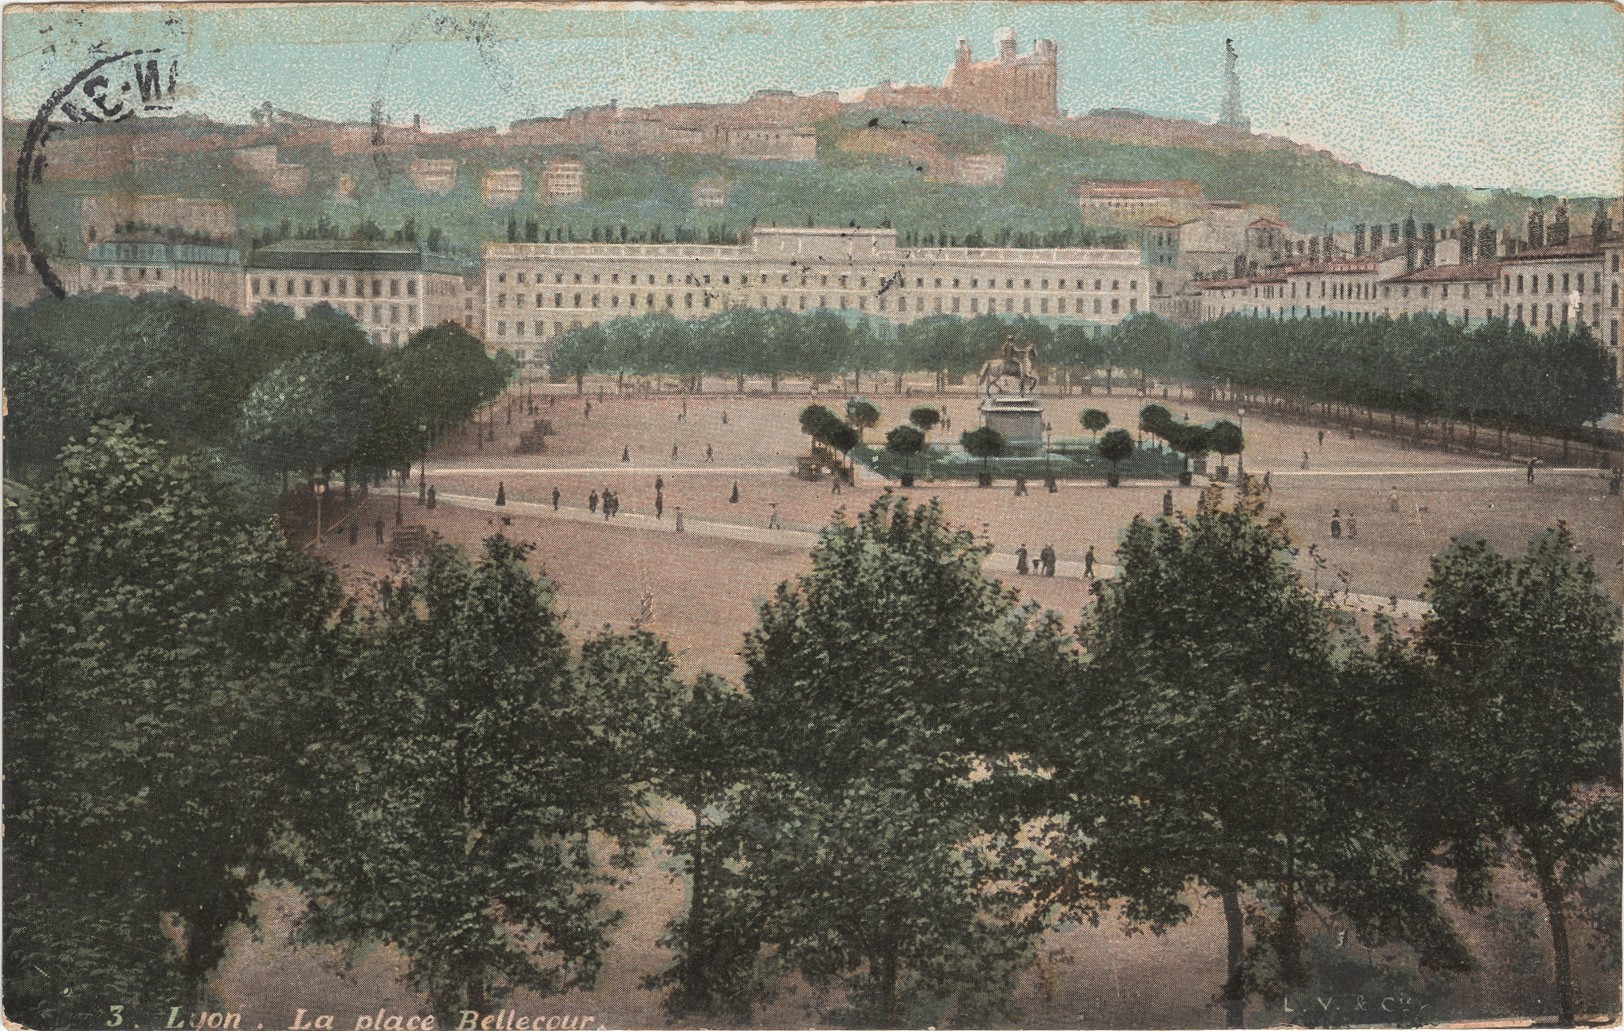 Lyon - La place Bellecour : carte postale NB colorisée (vers 1908, cote : 4FI/11244)